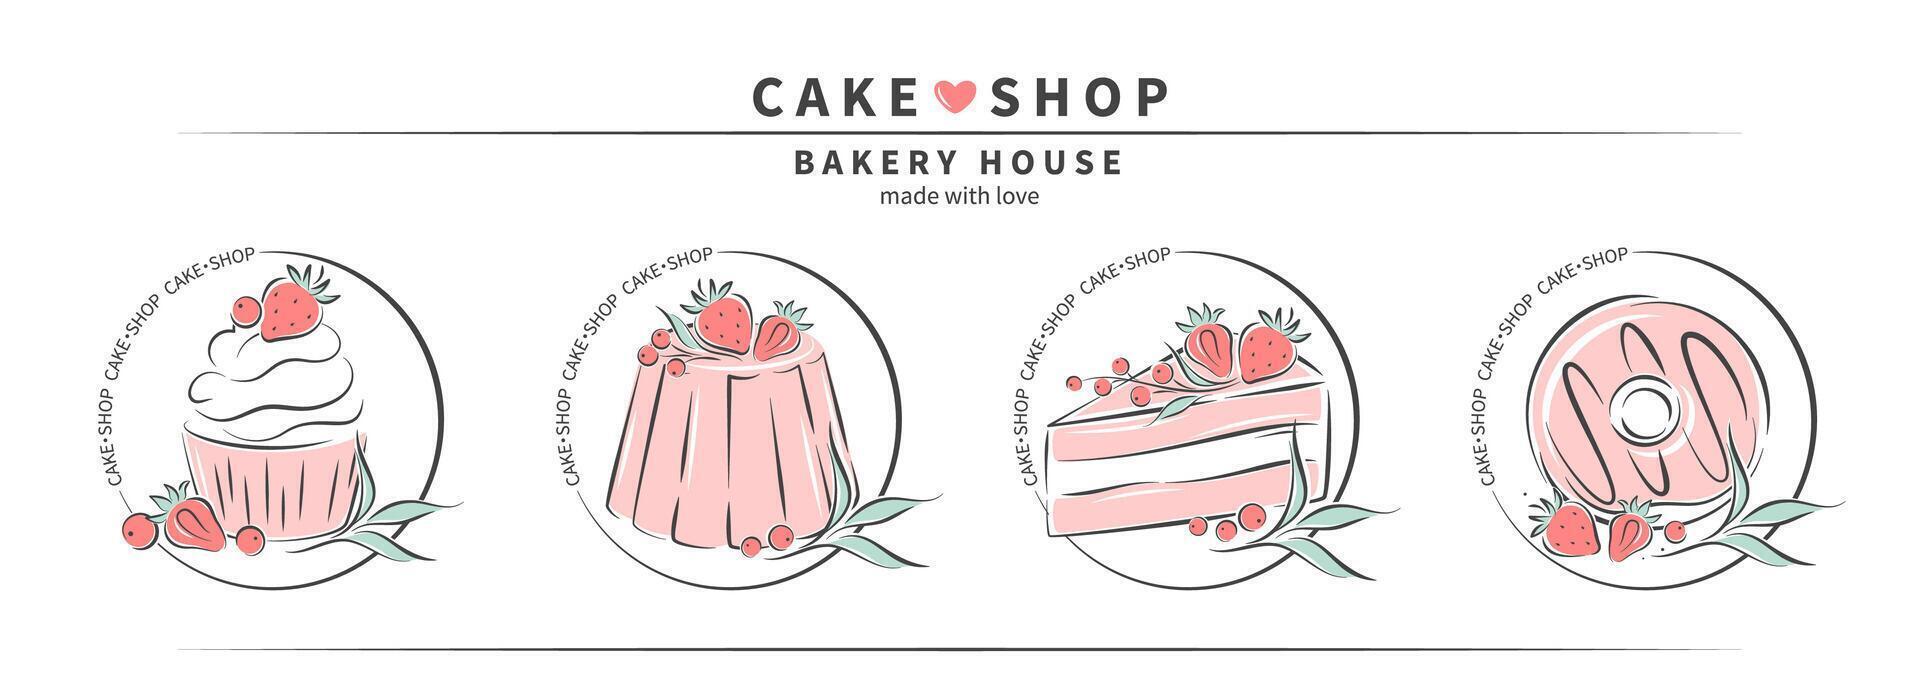 Kuchen Geschäft Logo. Sammlung von anders Dessert zum Gebäck und Brot Geschäft, Kochen, Süss Produkte. einstellen von Kuchen, Cupcakes und Donuts. Vektor Illustration zum Banner, Speisekarte, Werbung.